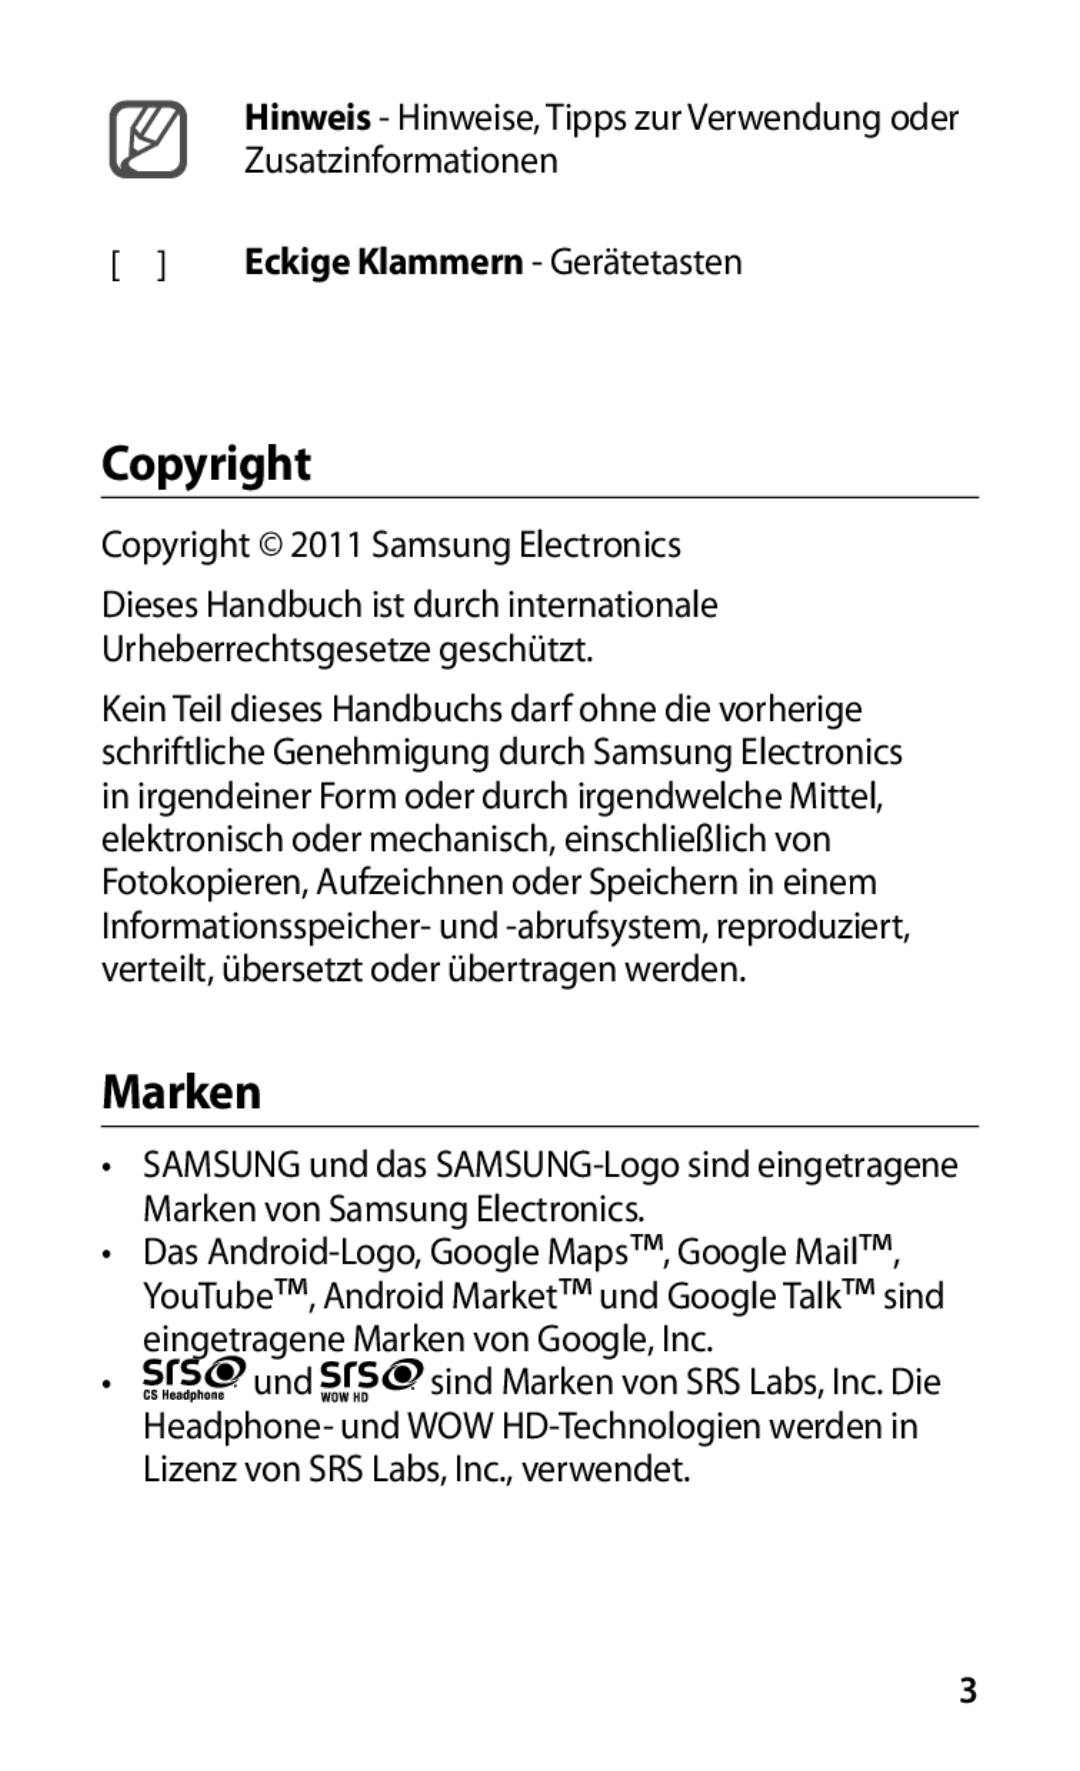 Samsung GT-S5830OKACOS manual Copyright, Marken, Hinweis - Hinweise, Tipps zur Verwendung oder Zusatzinformationen 